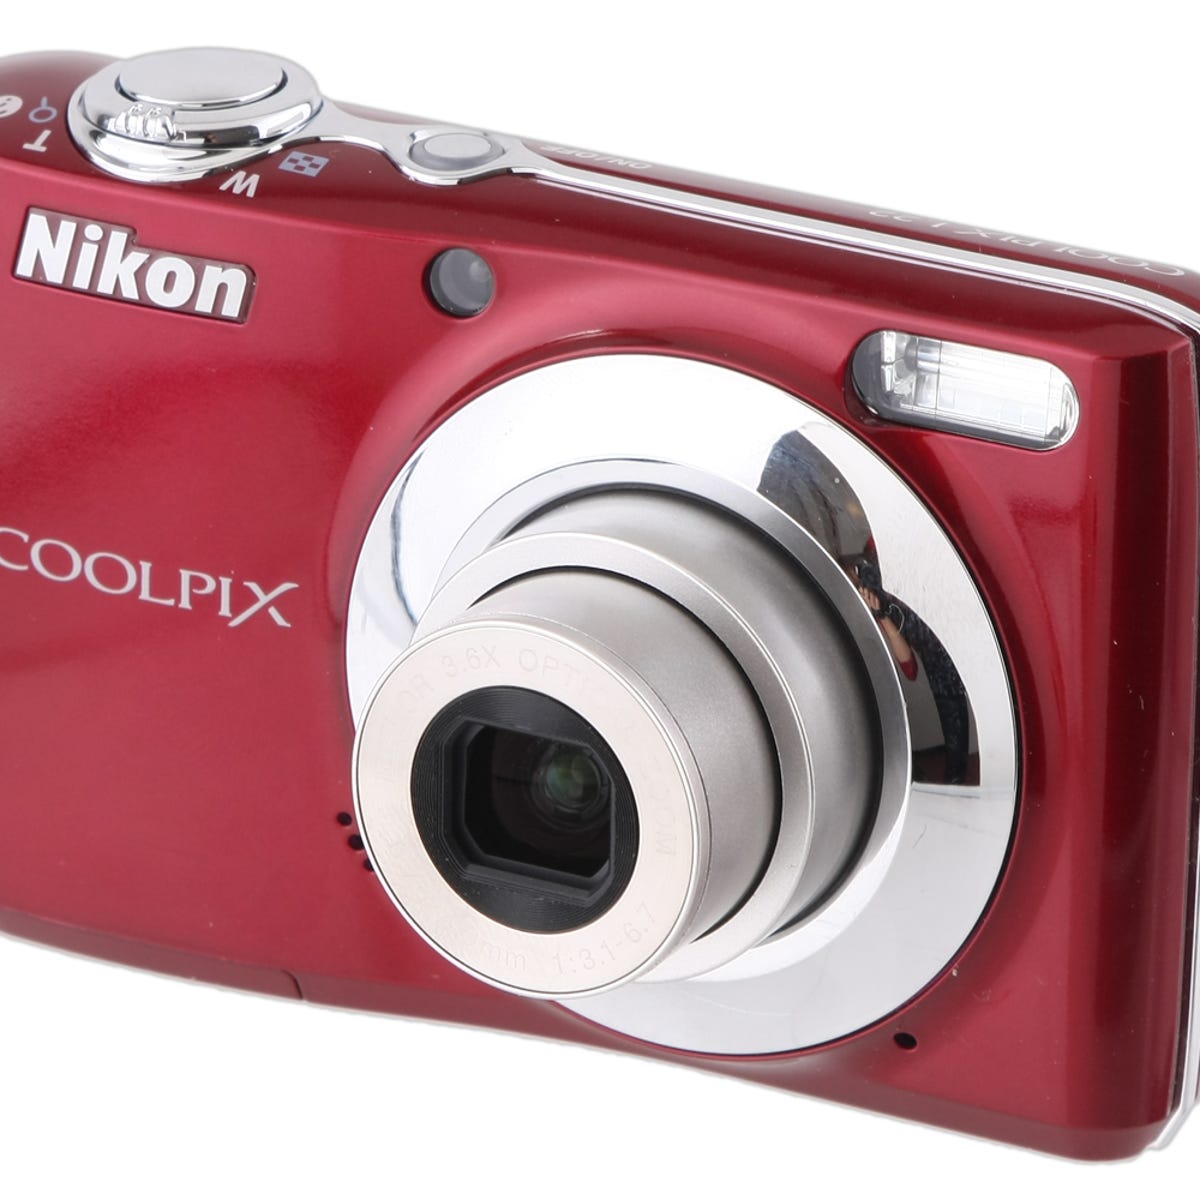 Nikon Coolpix L22 - digital camera review: Nikon Coolpix L22 